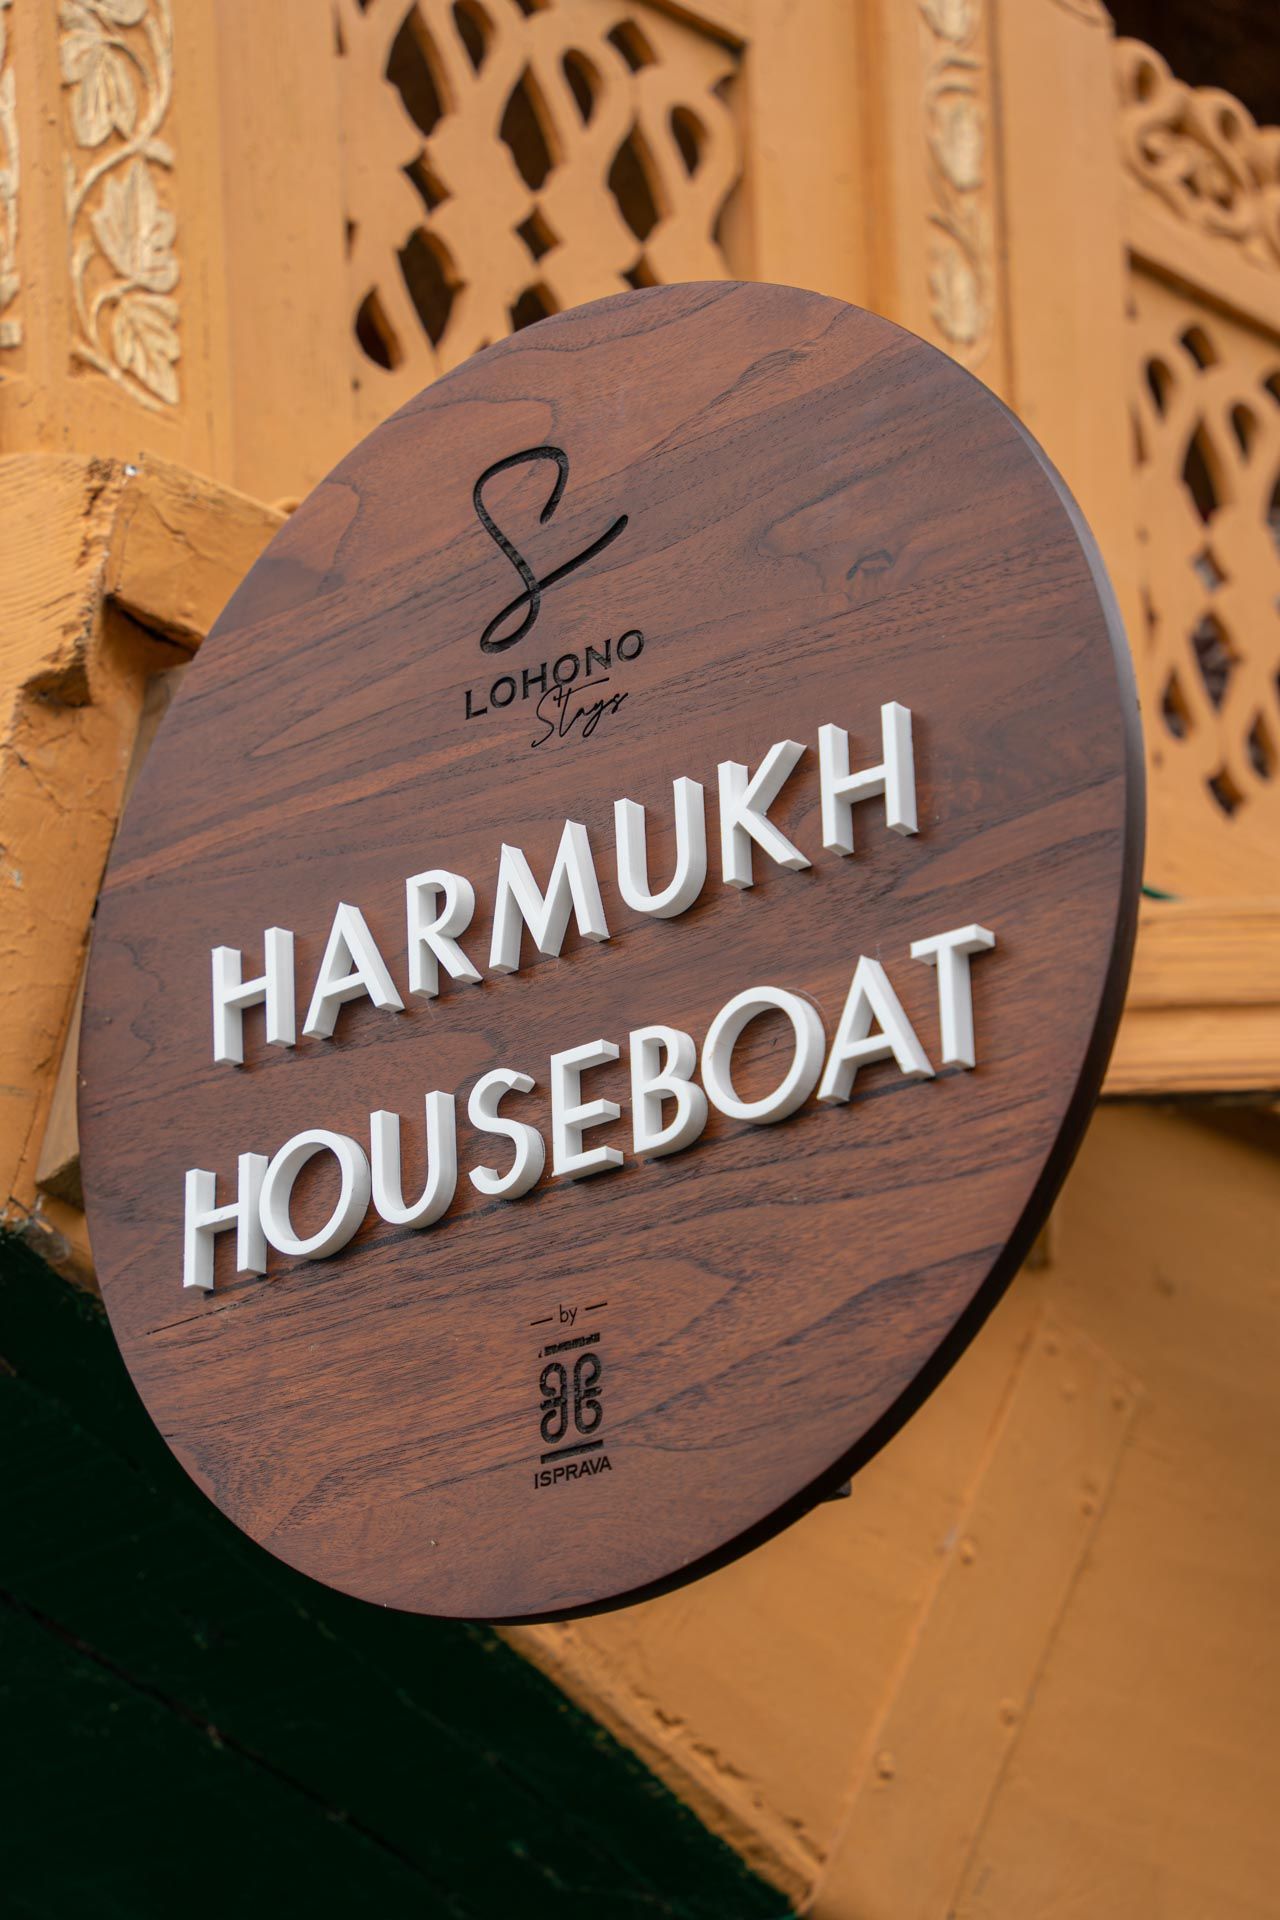 Harmukh Houseboat - Name board